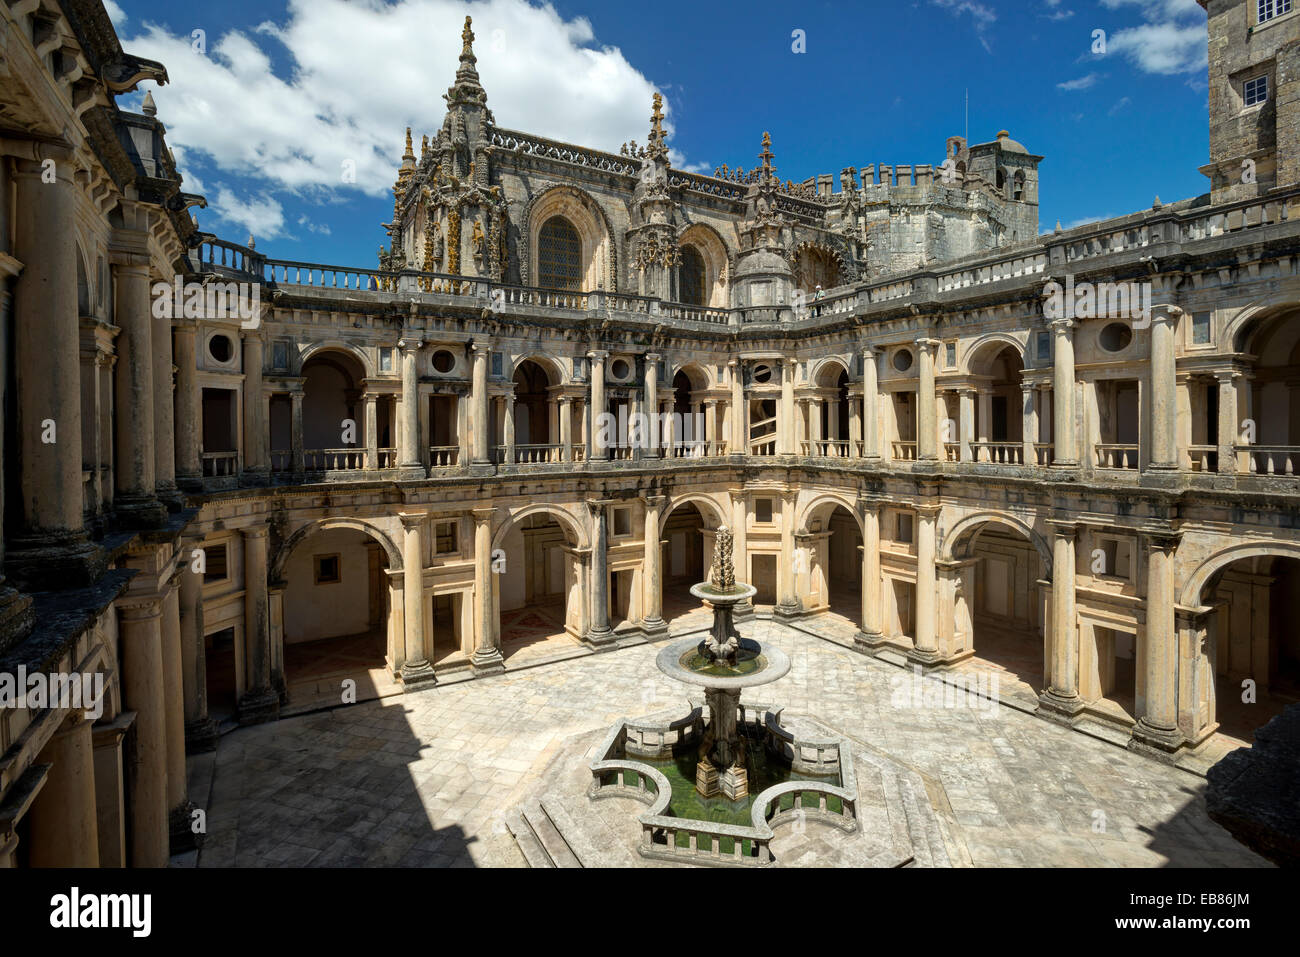 Portugal, the Ribatejo, Tomar convento de Cristo, the central cloisters in classical style Stock Photo